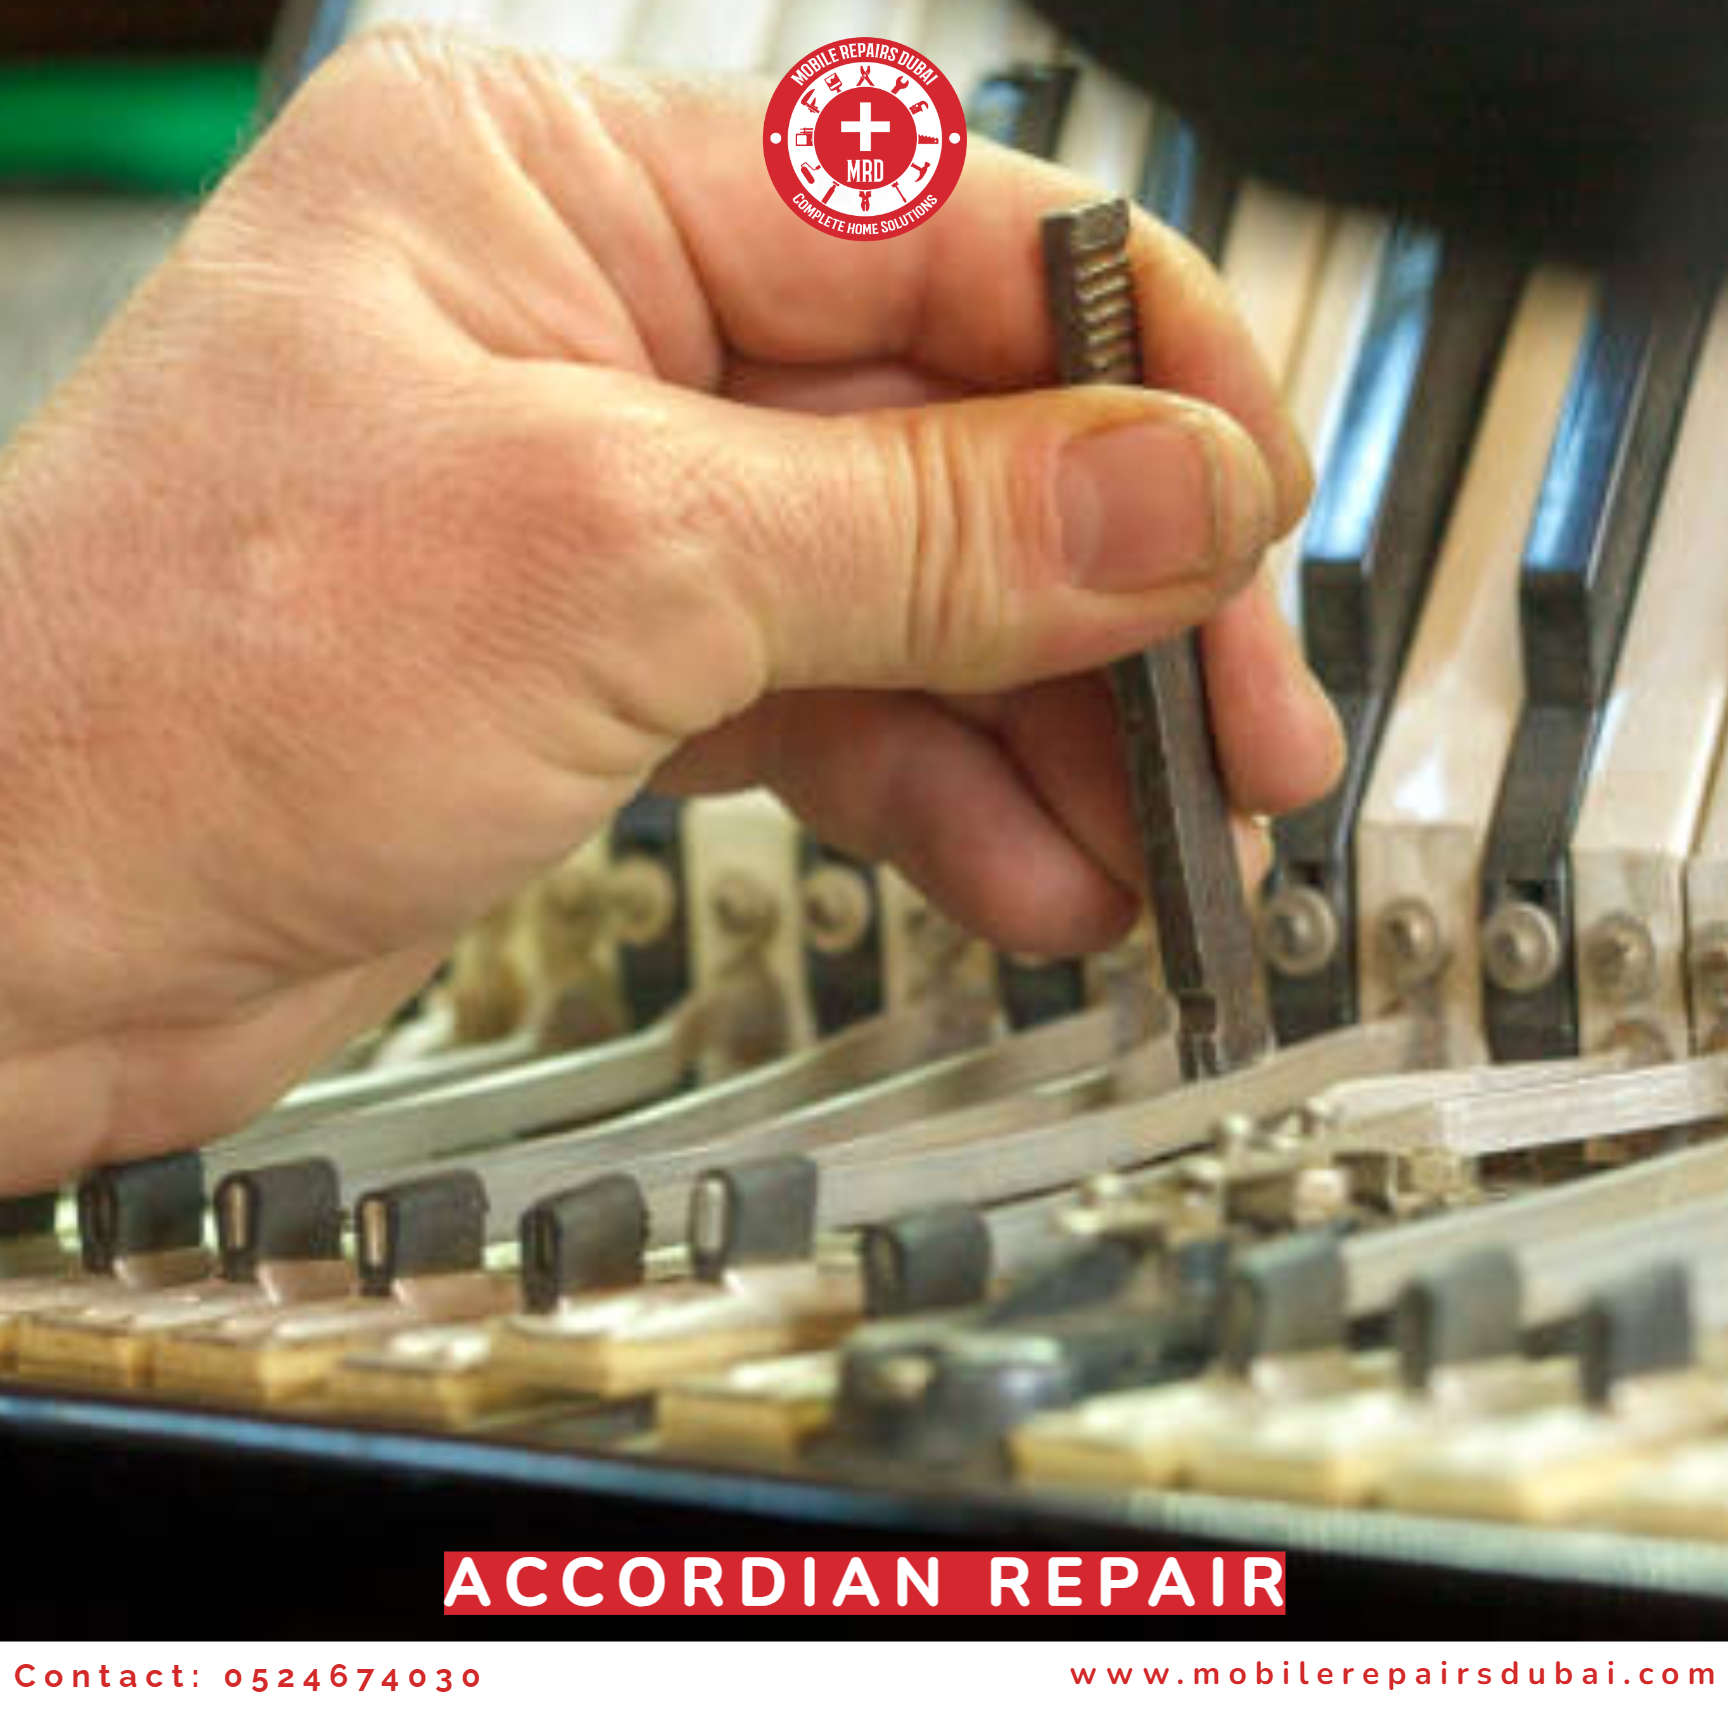 Accordion Repair - 0524674030 - MRD - Musical Instrument Repair